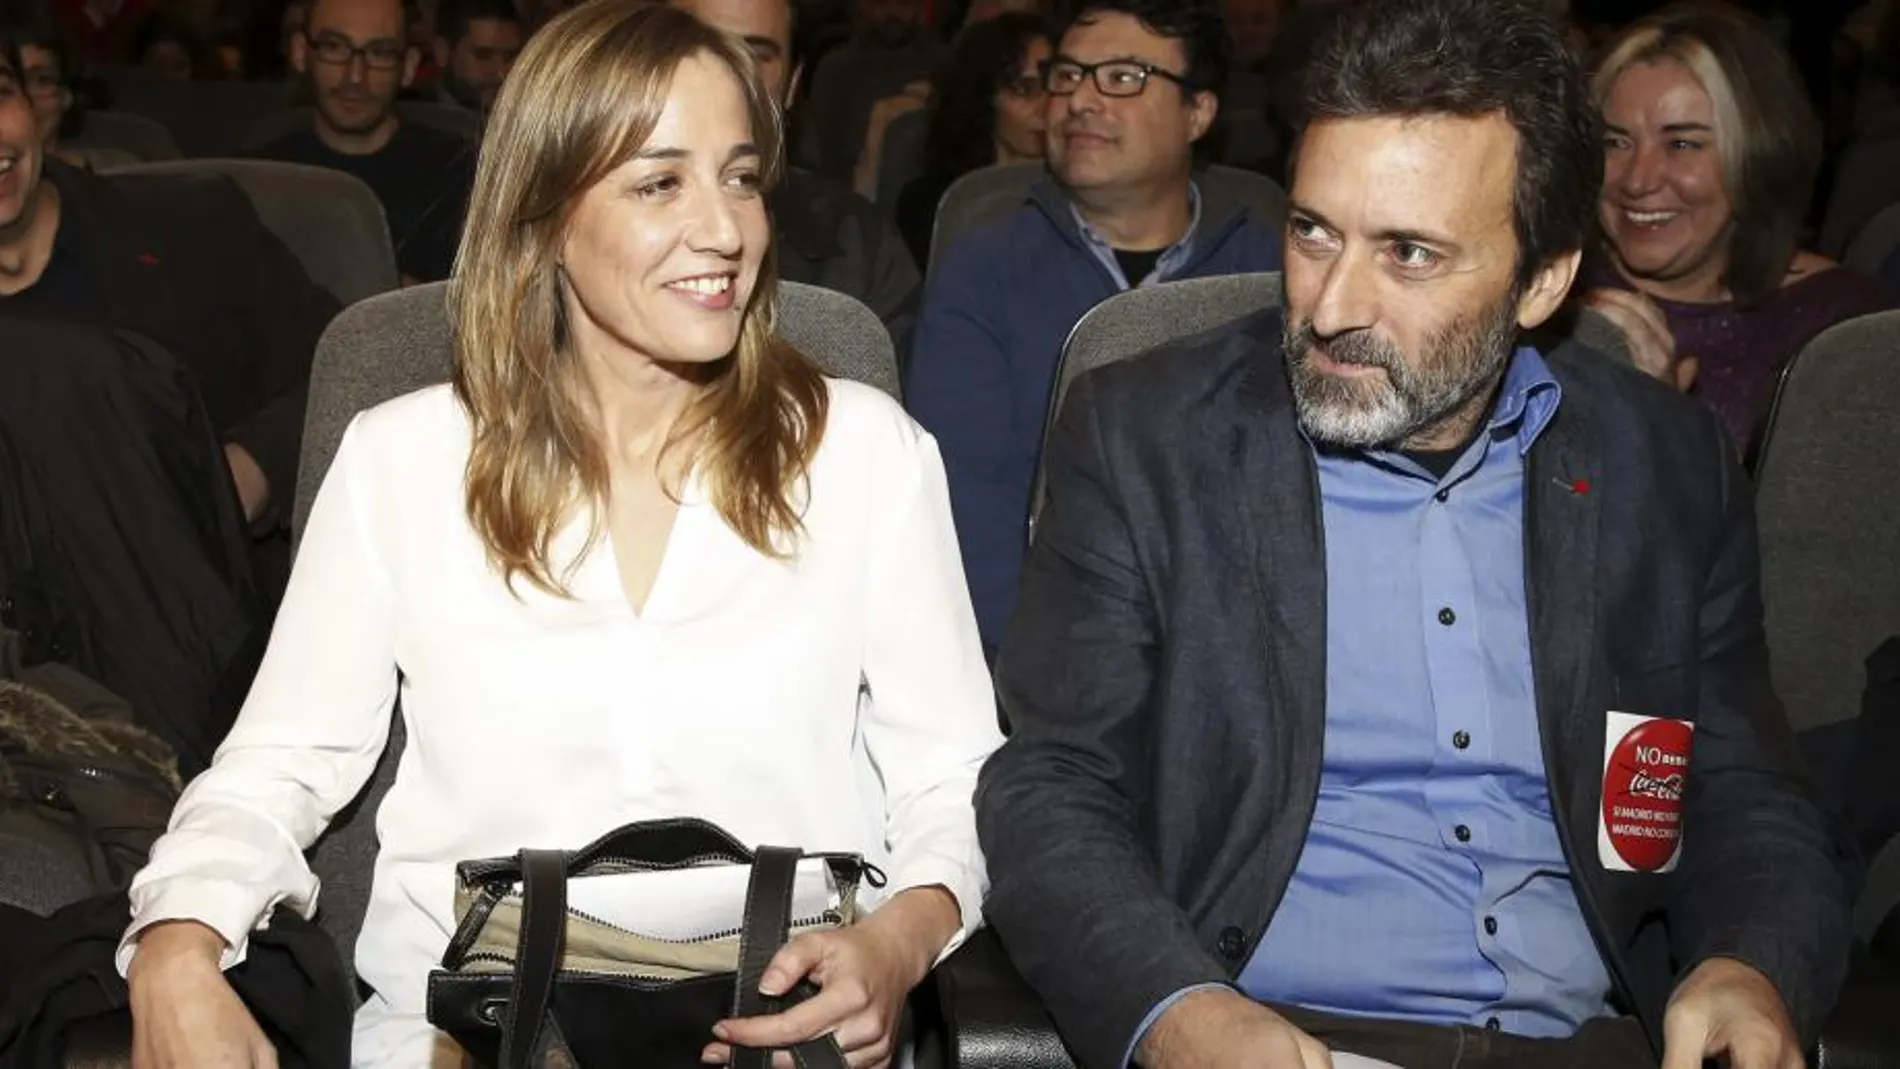 Tania Sánchez junto a Mauricio Valiente, candidatos de Izquierda Unida a la presidencia de la Comunidad de Madrid y a la alcaldía, respectivamente